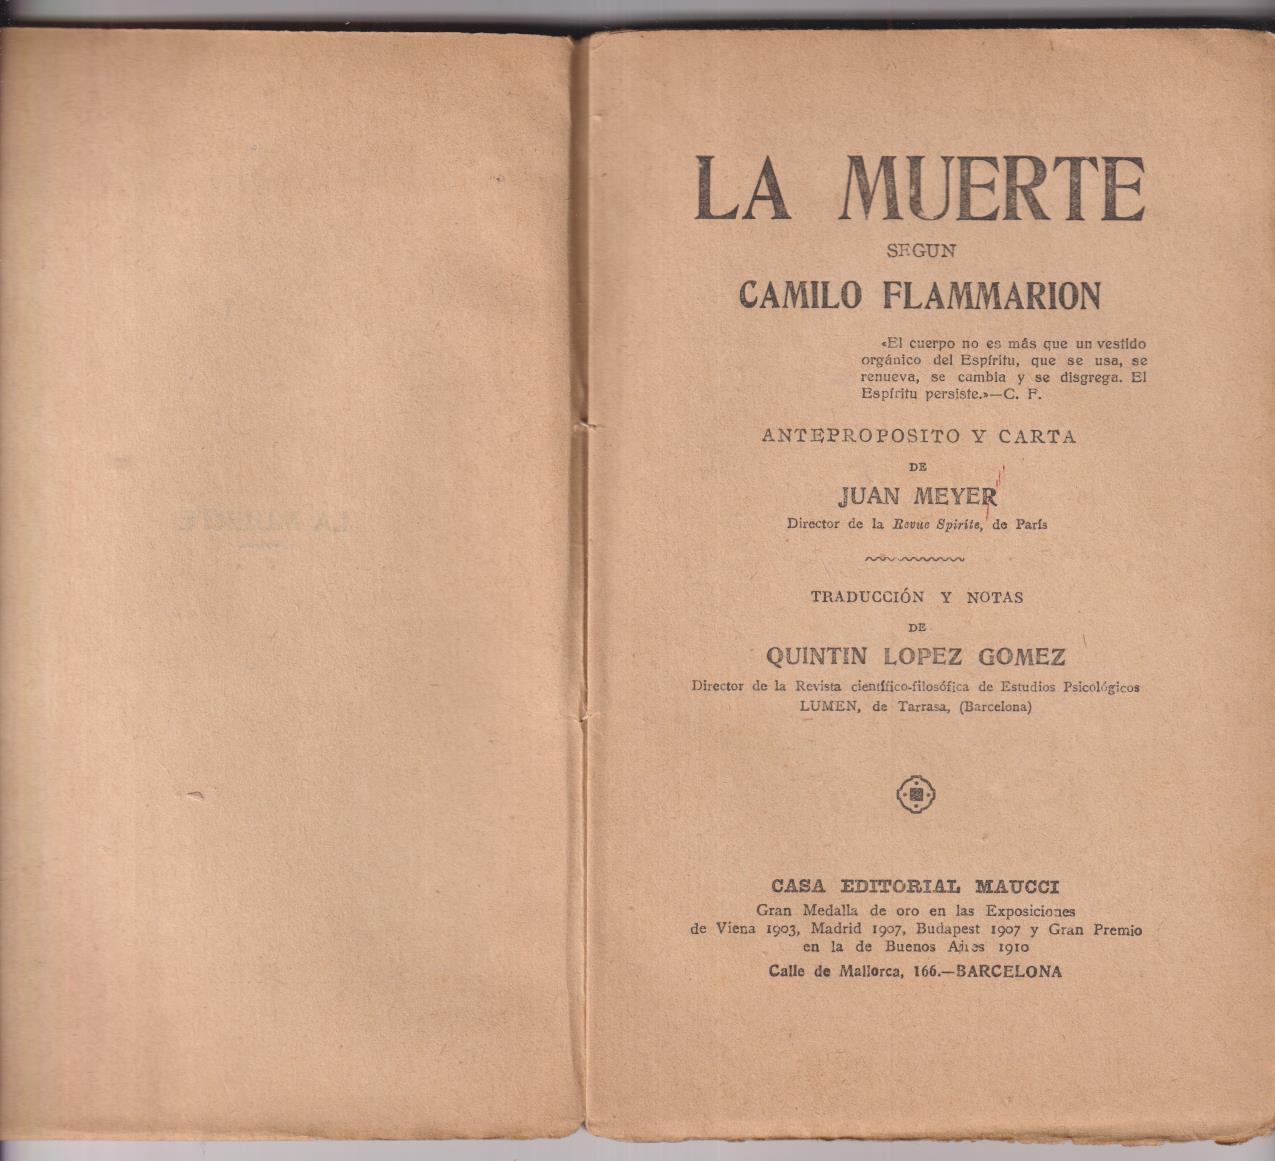 La Muerte según Camilo Flammarión. Anteproposito y carta de Juan Meyer. Maucci 1923